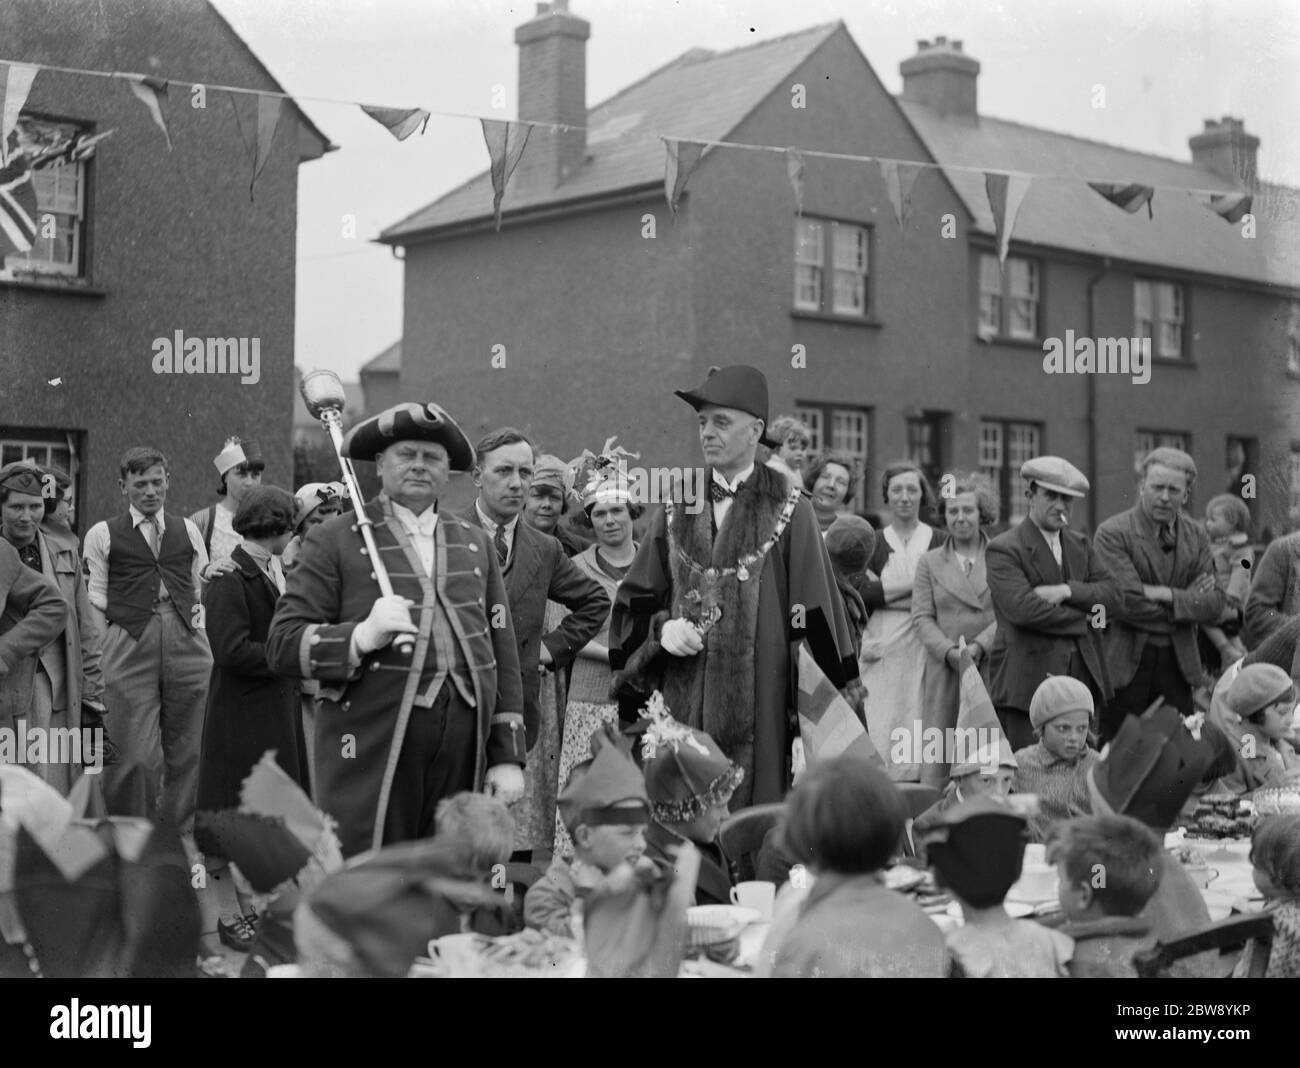 Krönungstees auf Hawthorne Road in Dartford, Kent, um die Krönung von König George VI zu feiern. 15 Mai 1937 Stockfoto